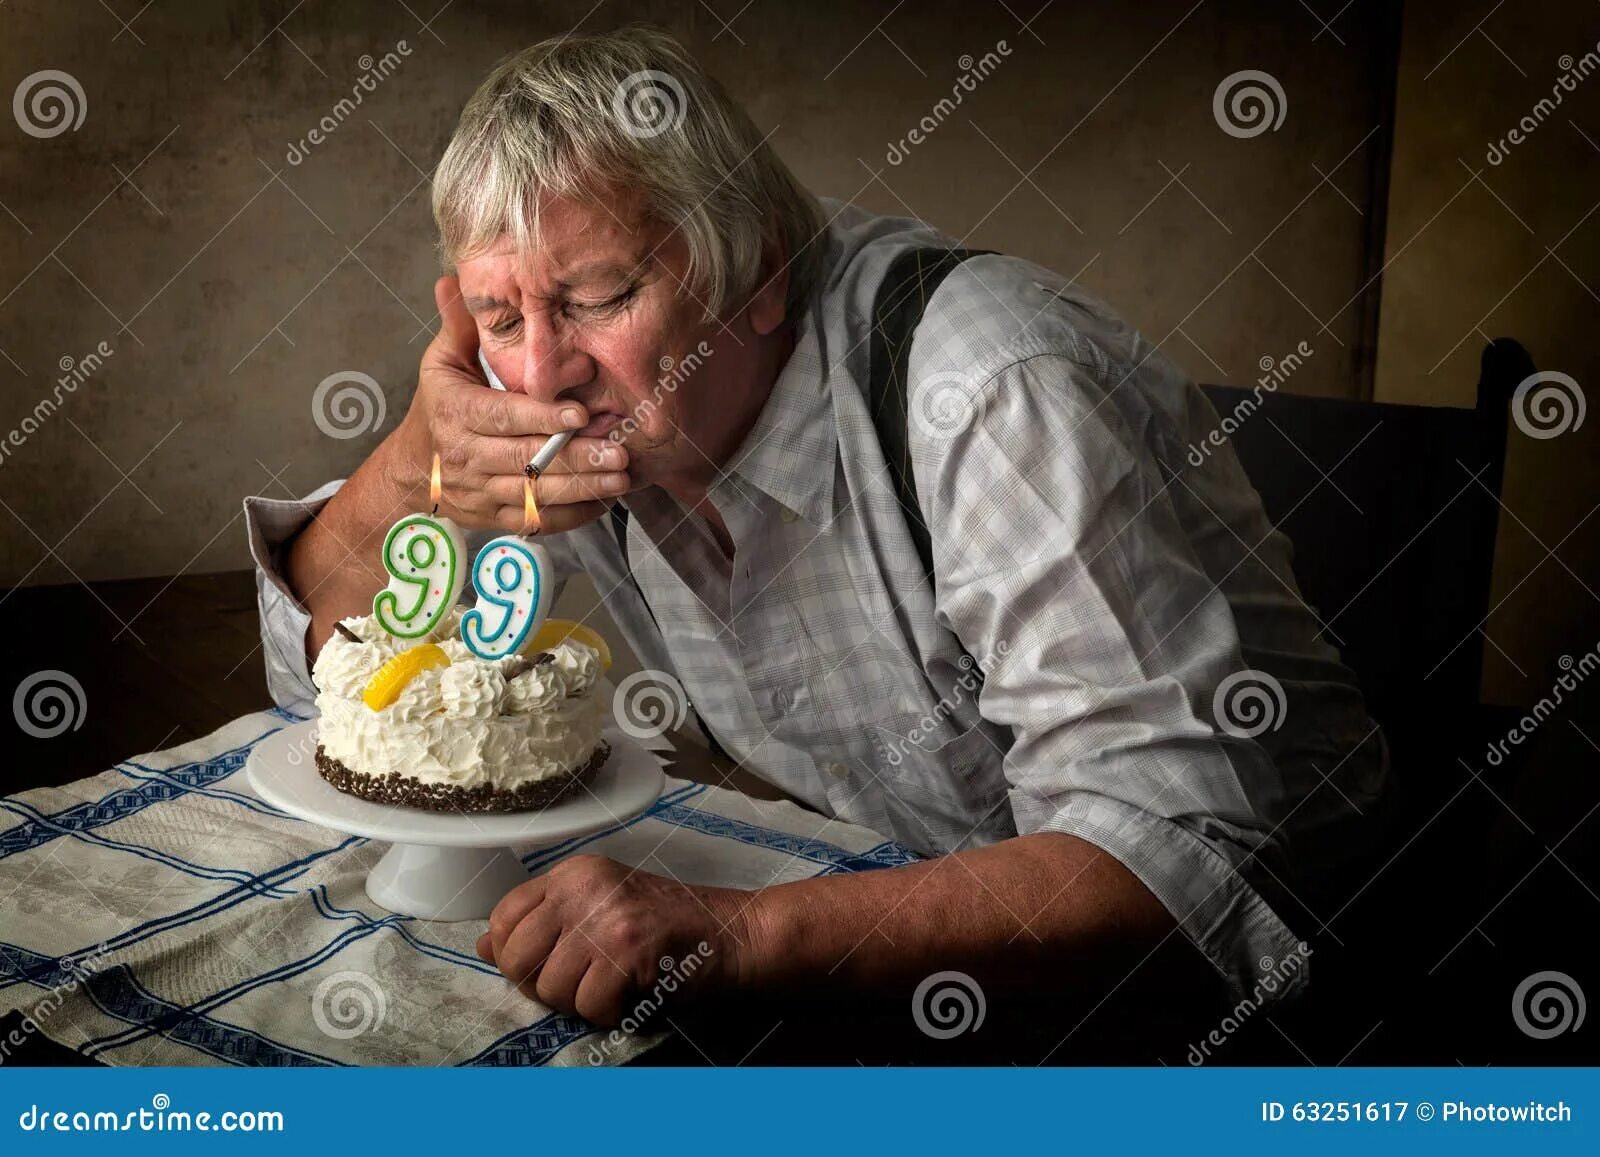 Др по возрасту. Одинокий день рождения. С днем рождения старик. С юбилеем старик. Торт старость.